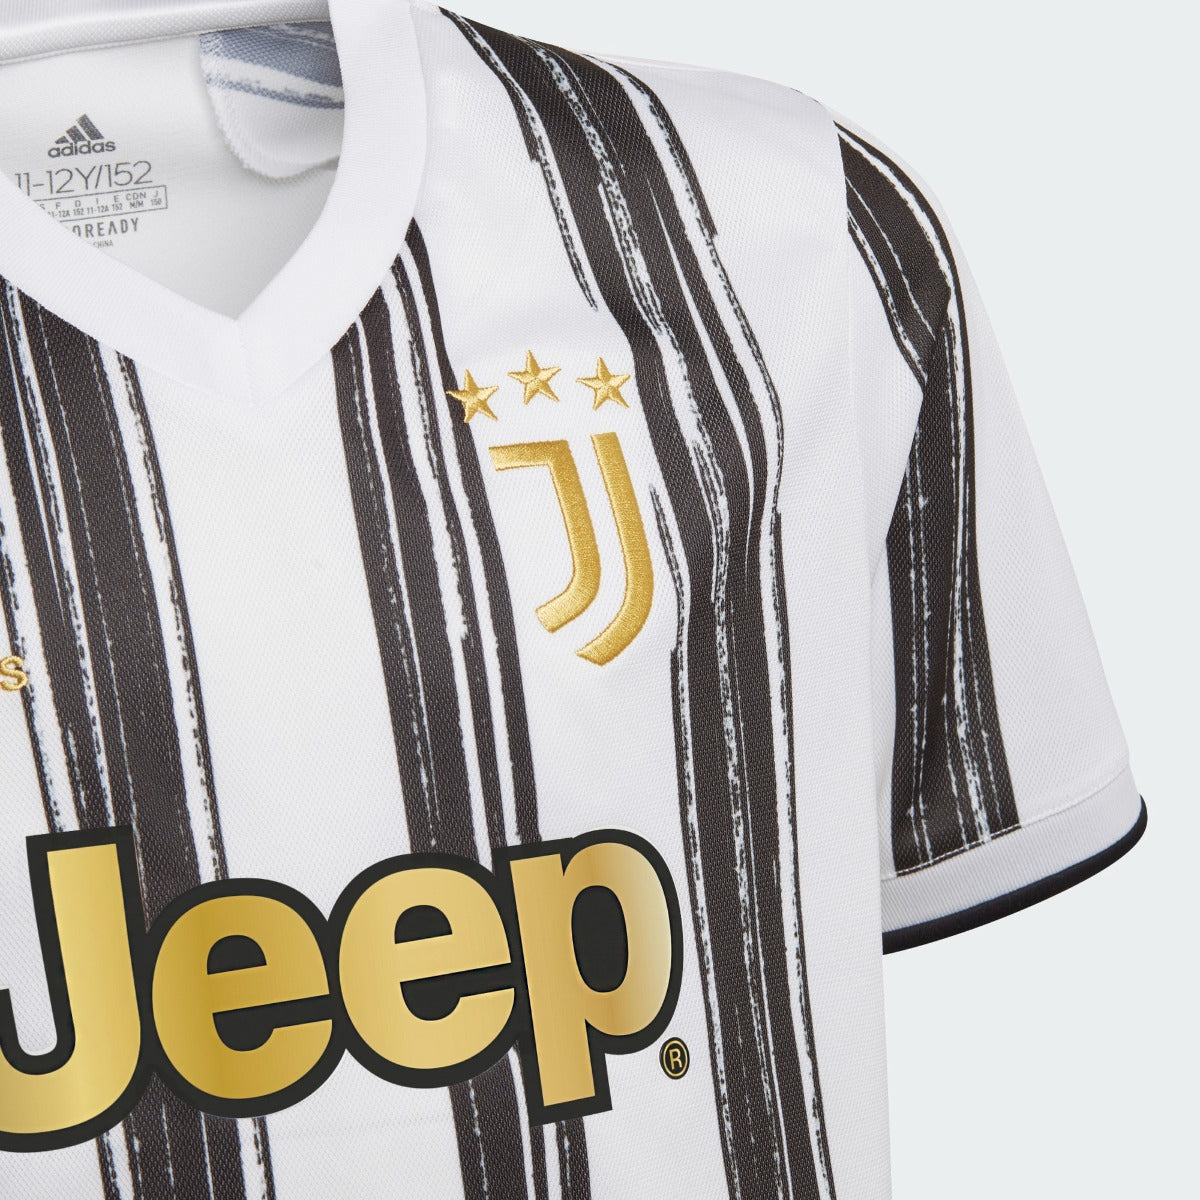 Adidas 2020-21 Juventus Youth Home Jersey - White-Black